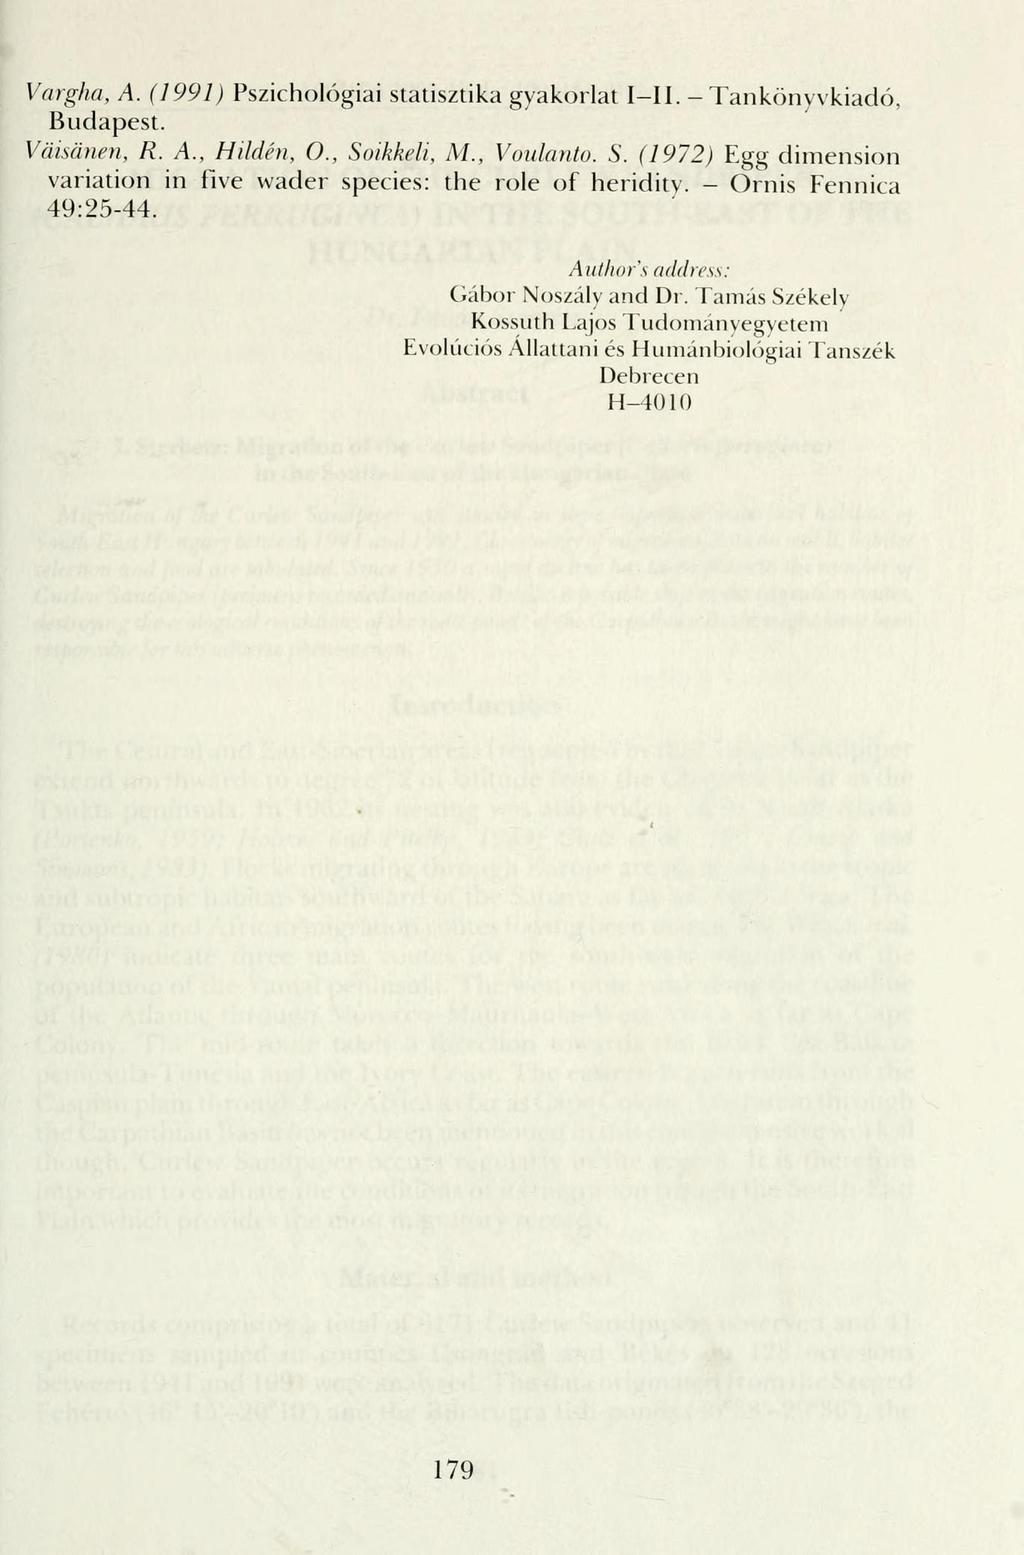 Vargha, A. (1991) Pszichológiai statisztika gyakorlat I II. - Tankönyvkiadó, Budapest. Väisänen, R. A., Hilden, 0., Soikkeli, M., Voidanto. S. (1972) Egg dimension Variation in five wader species: the role of heridity.